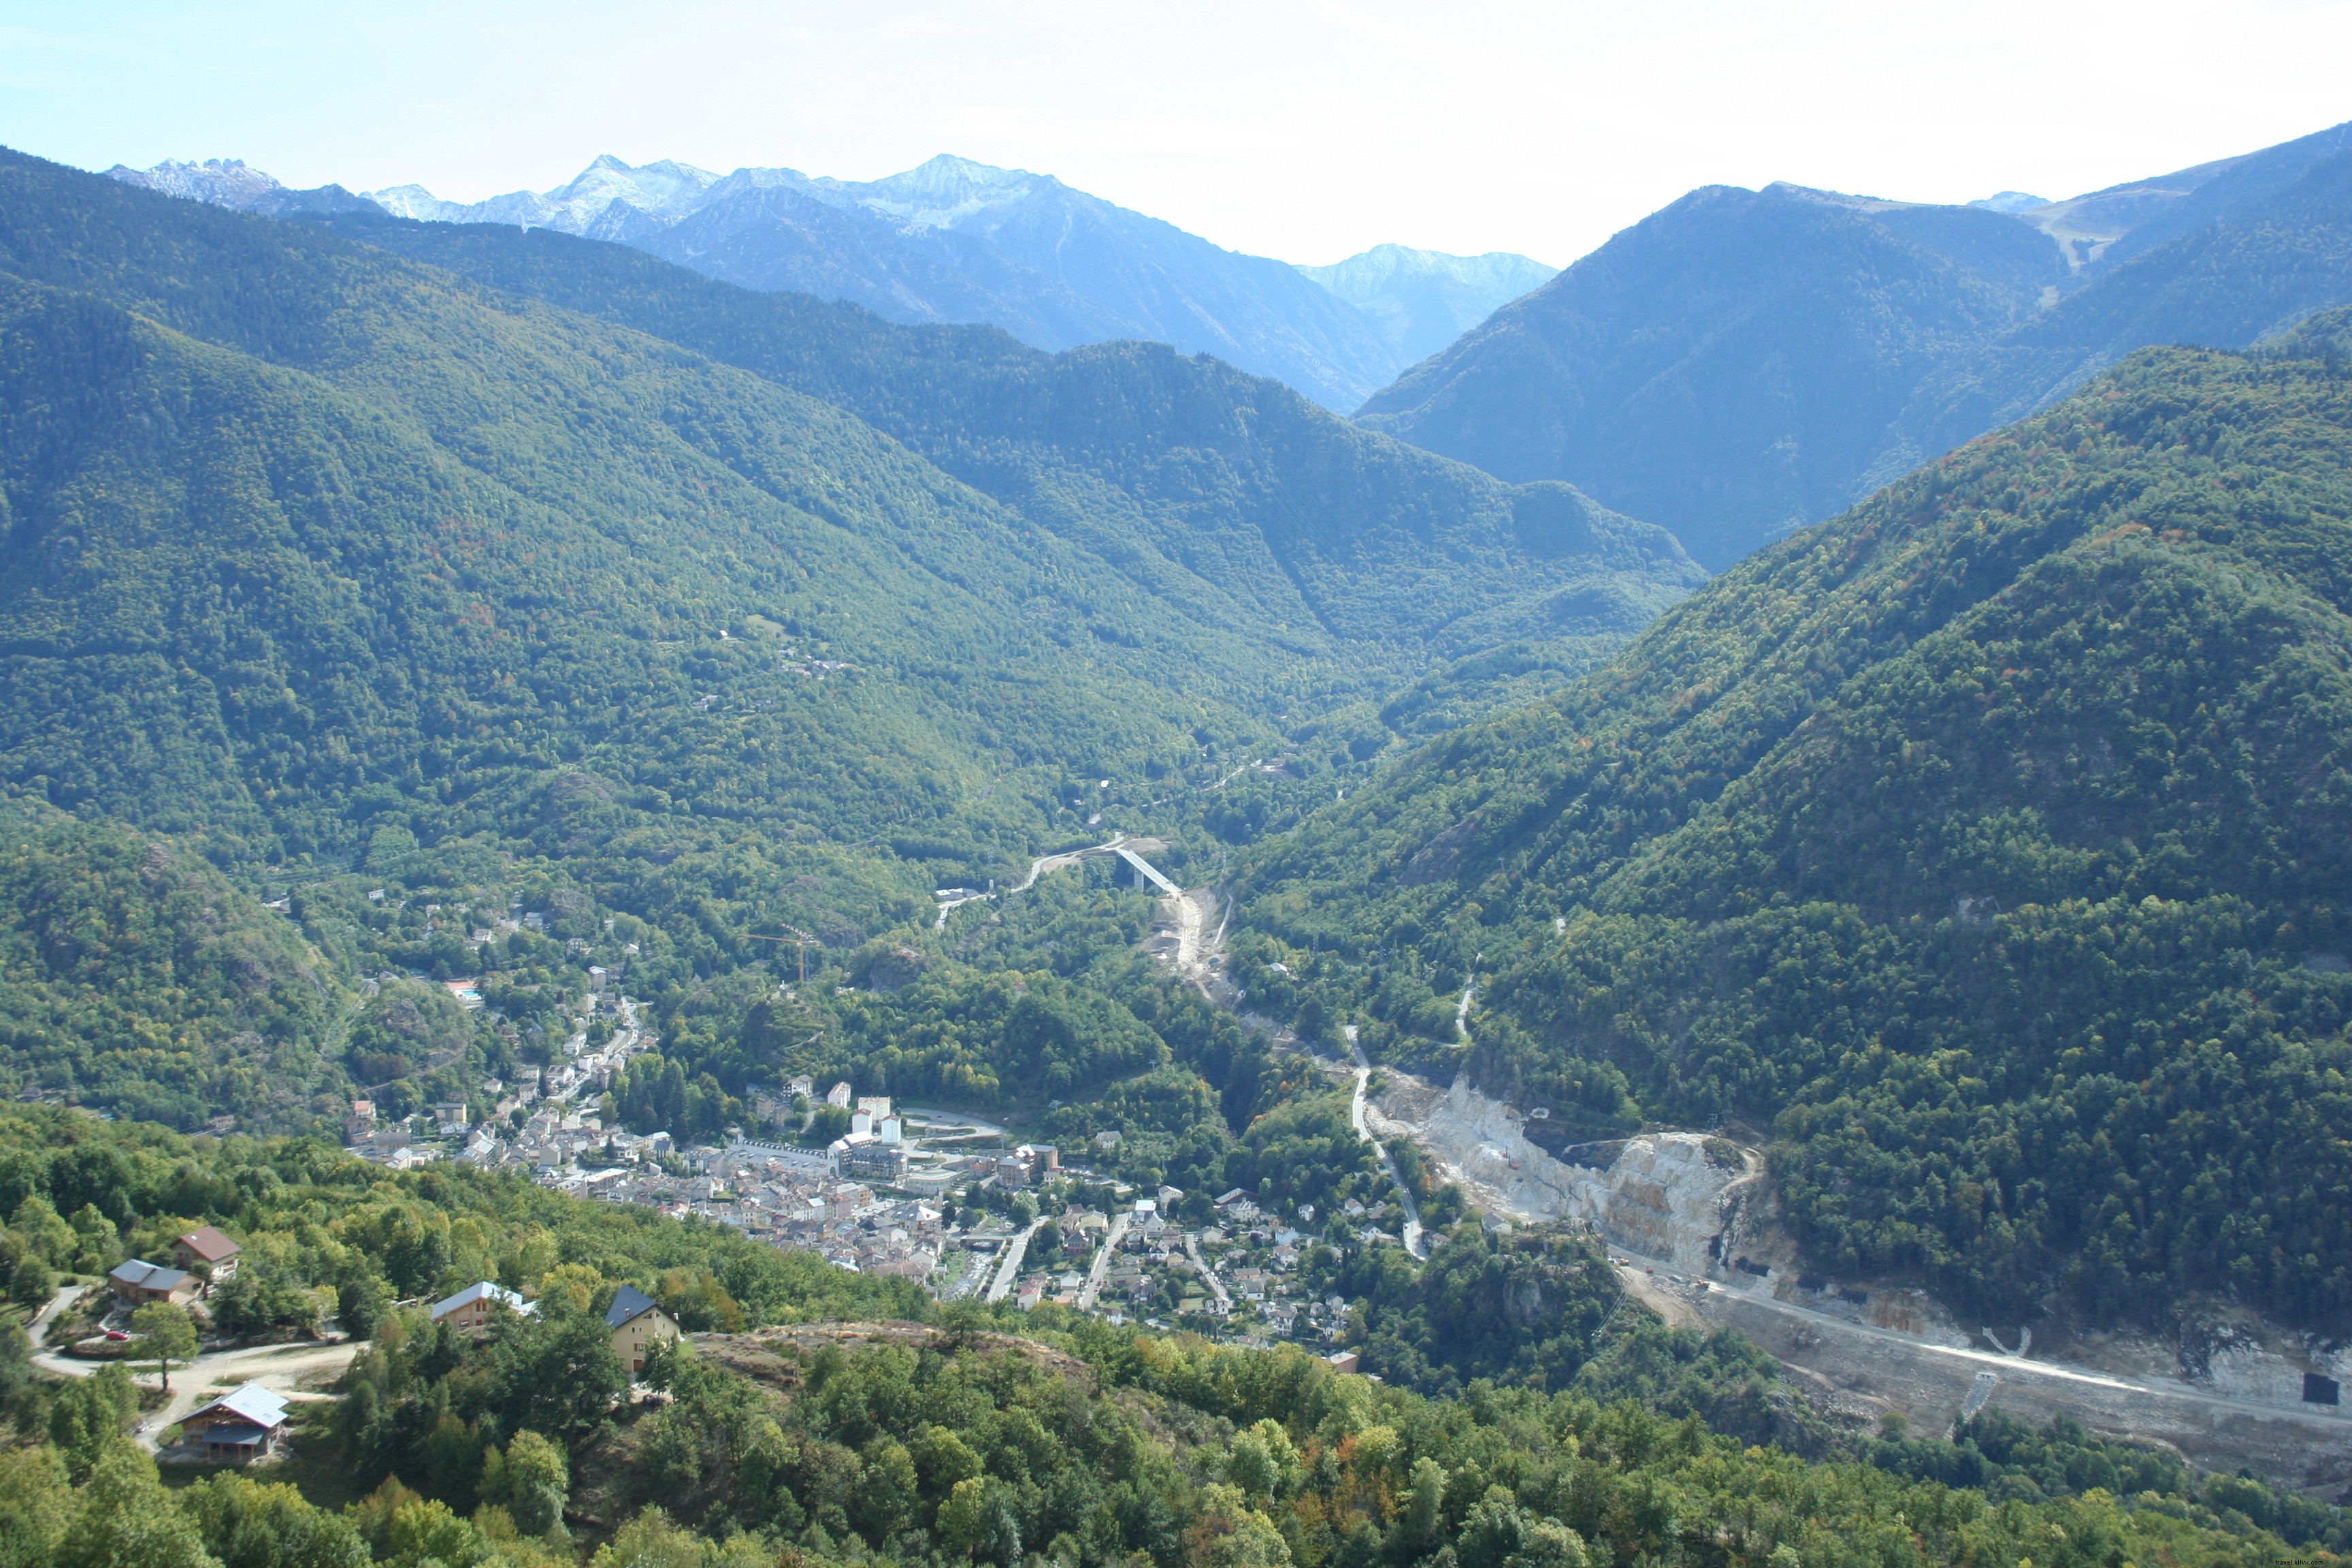 Oito lugares que você não deve perder em uma viagem aos Pirineus franceses